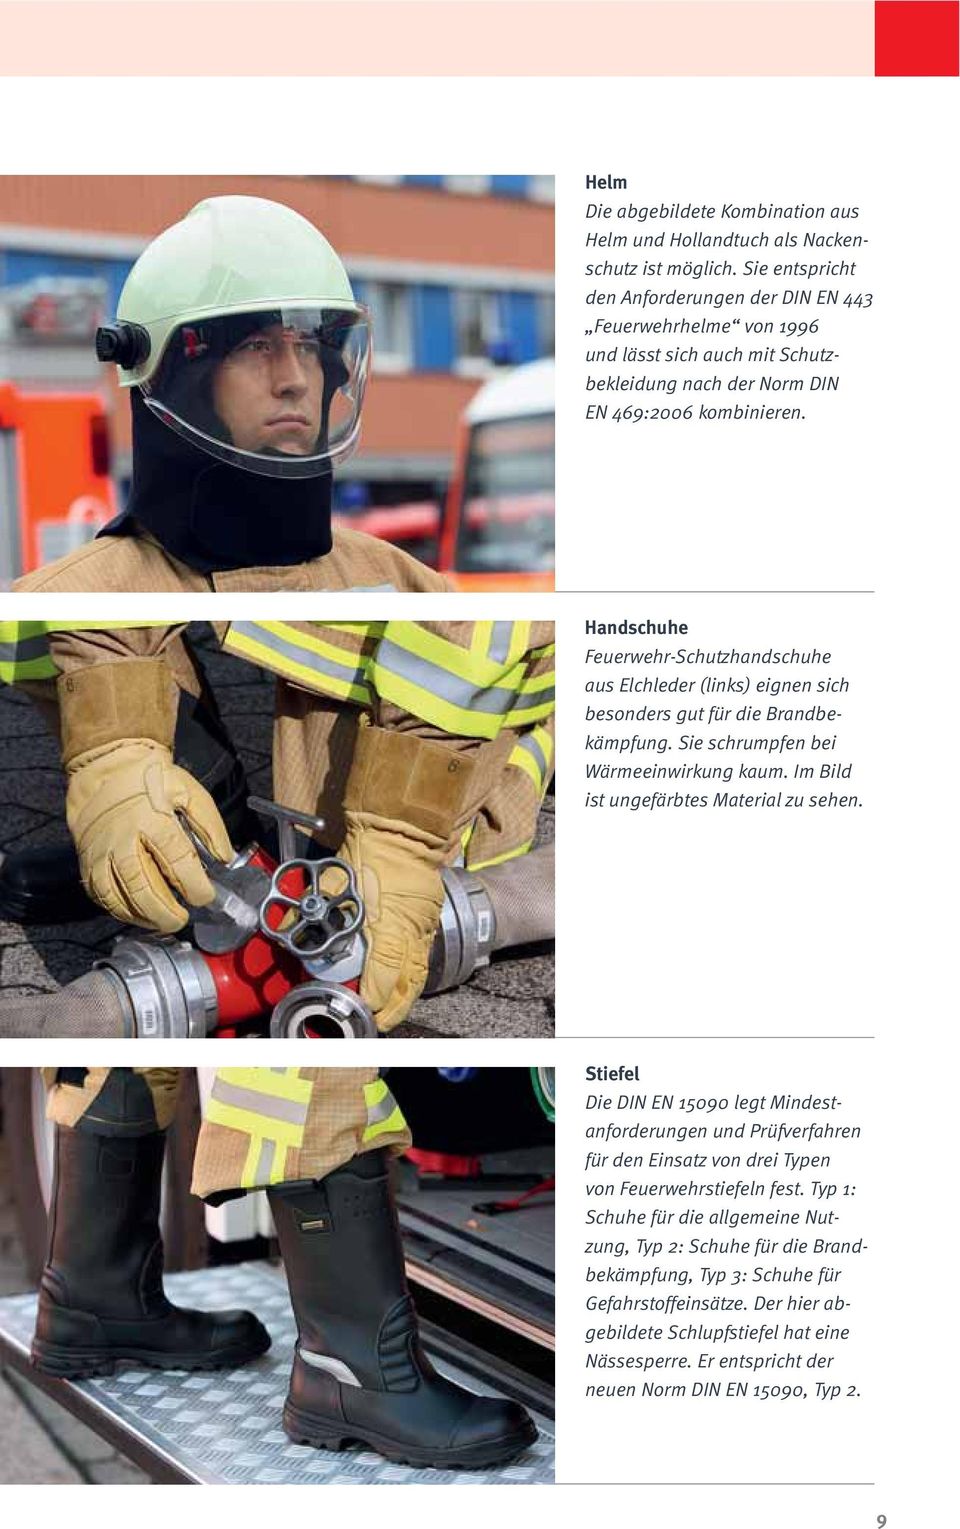 Handschuhe Feuerwehr-Schutzhandschuhe aus Elchleder (links) eignen sich besonders gut für die Brandbekämpfung. Sie schrumpfen bei Wärmeeinwirkung kaum. Im Bild ist ungefärbtes Material zu sehen.